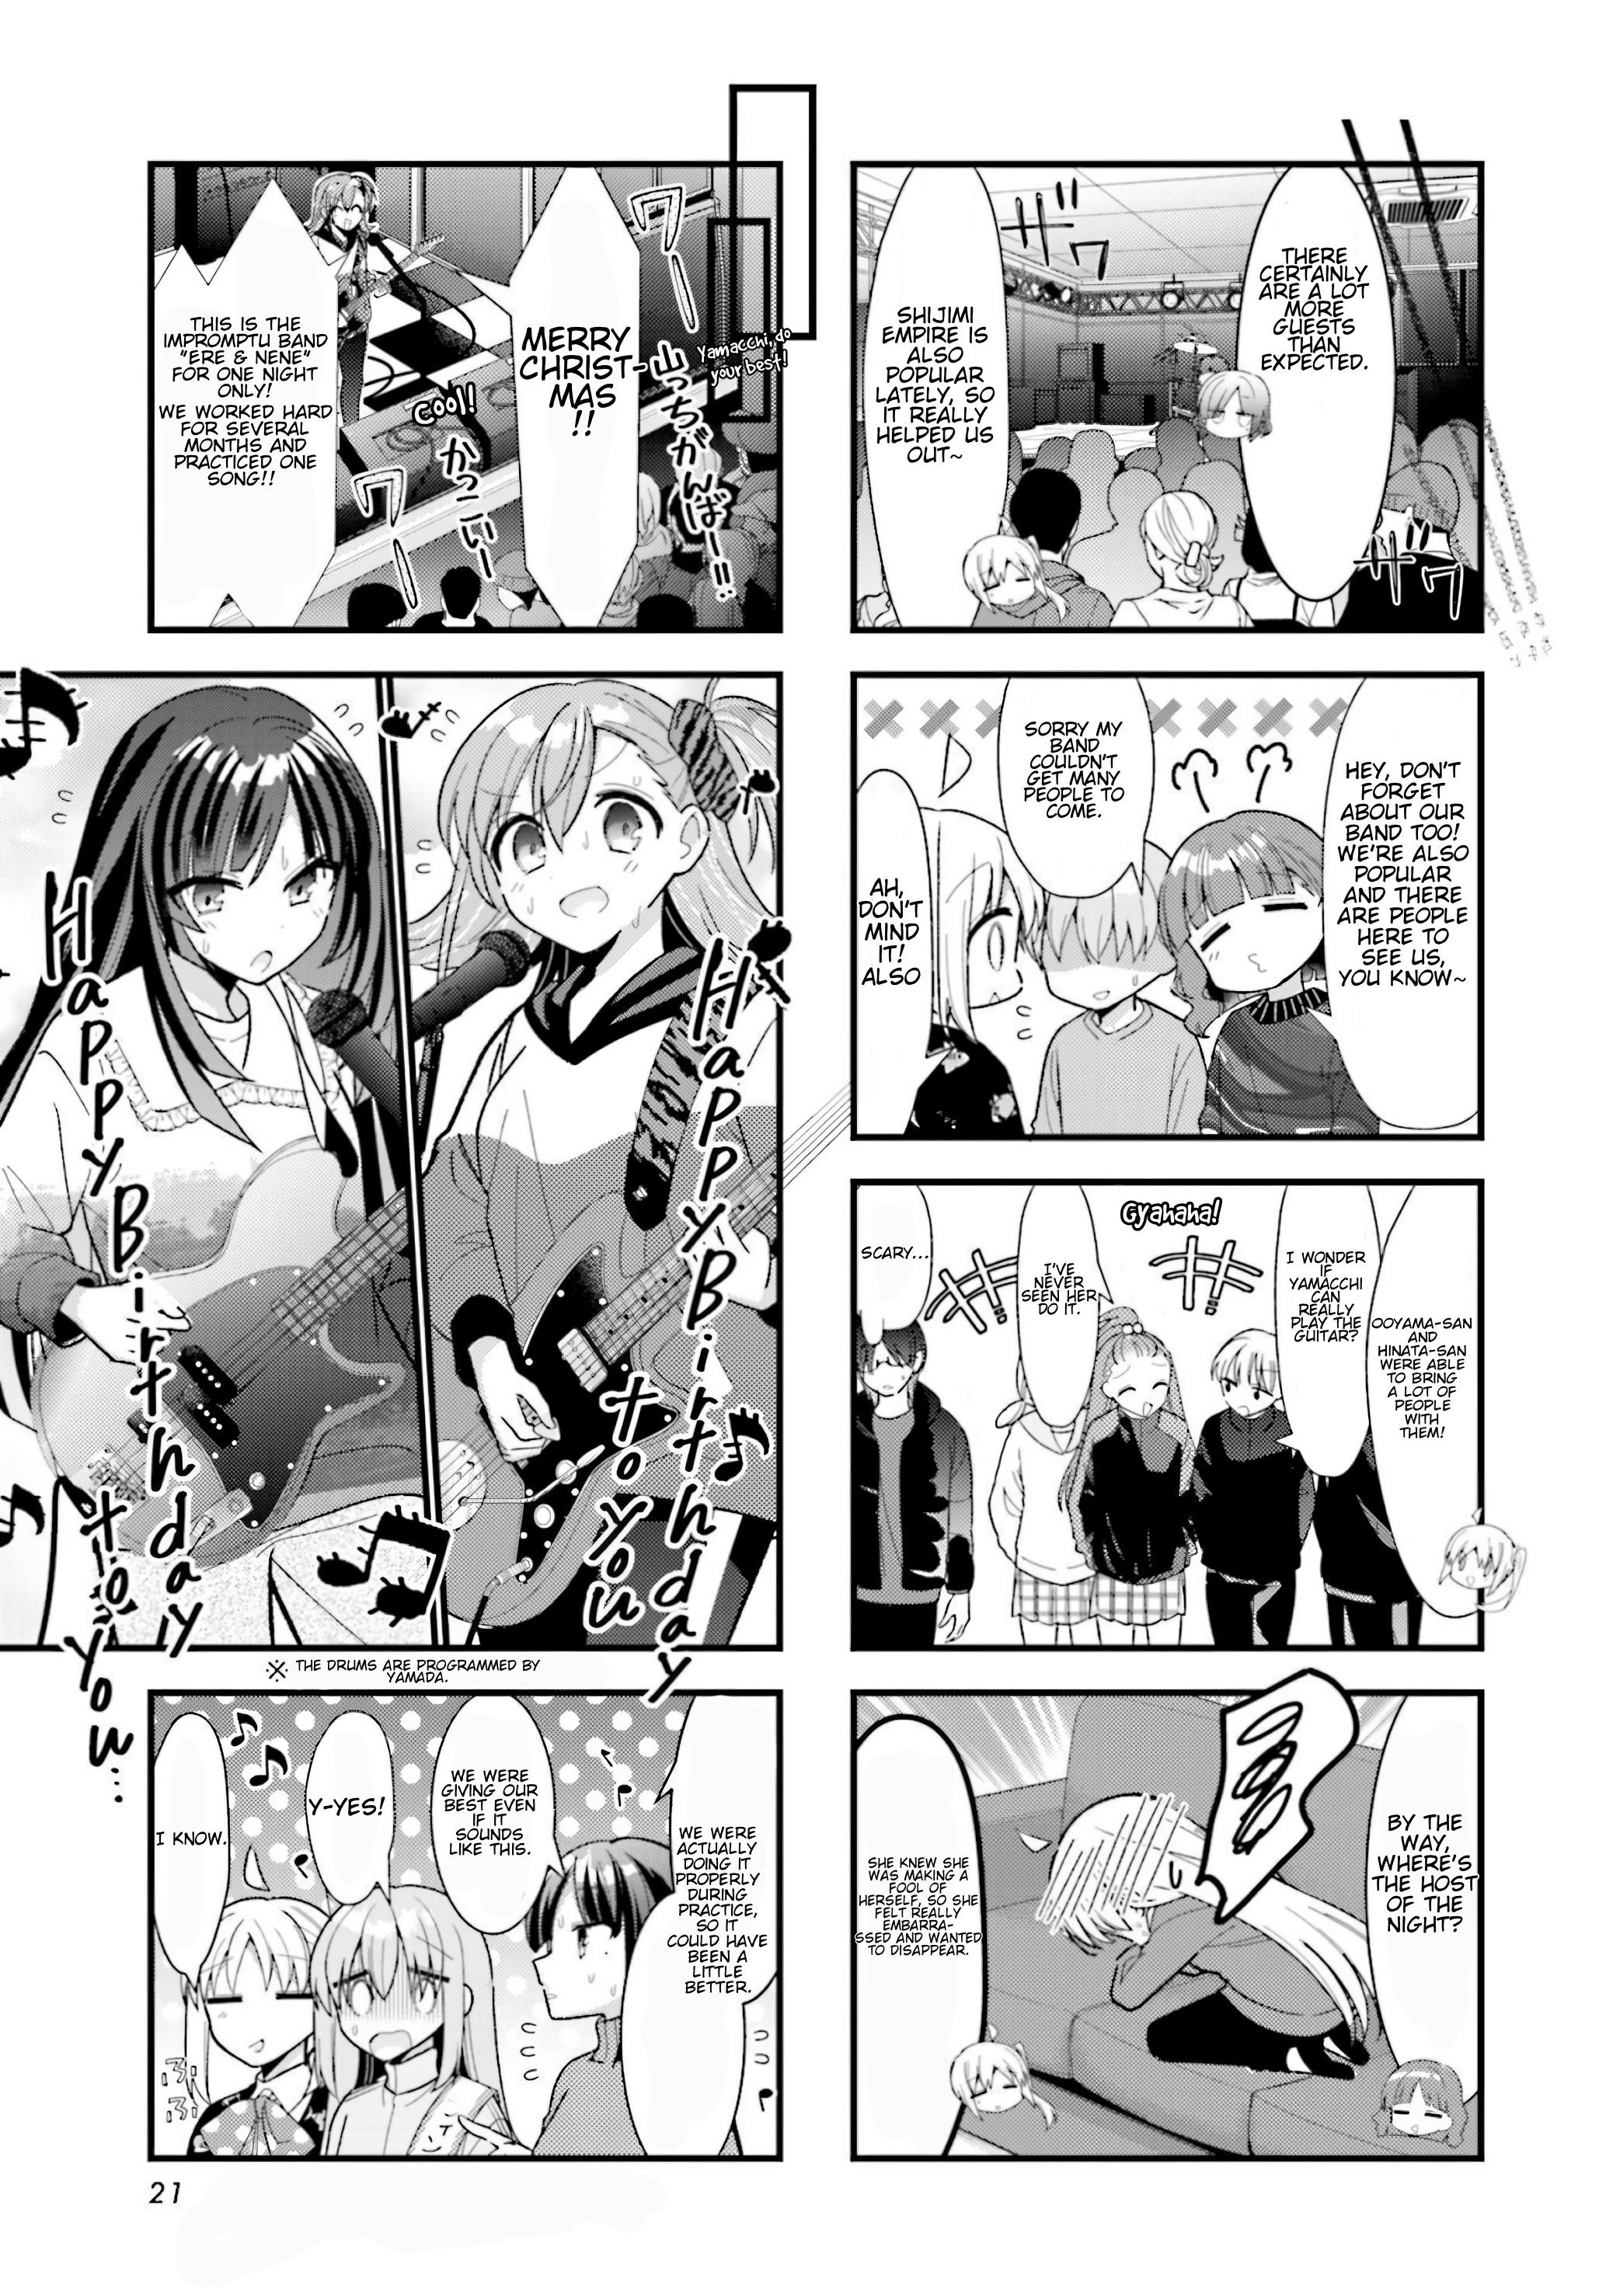 Sachi-Iro no One Room Manga - Chapter 63 - Manga Rock Team - Read